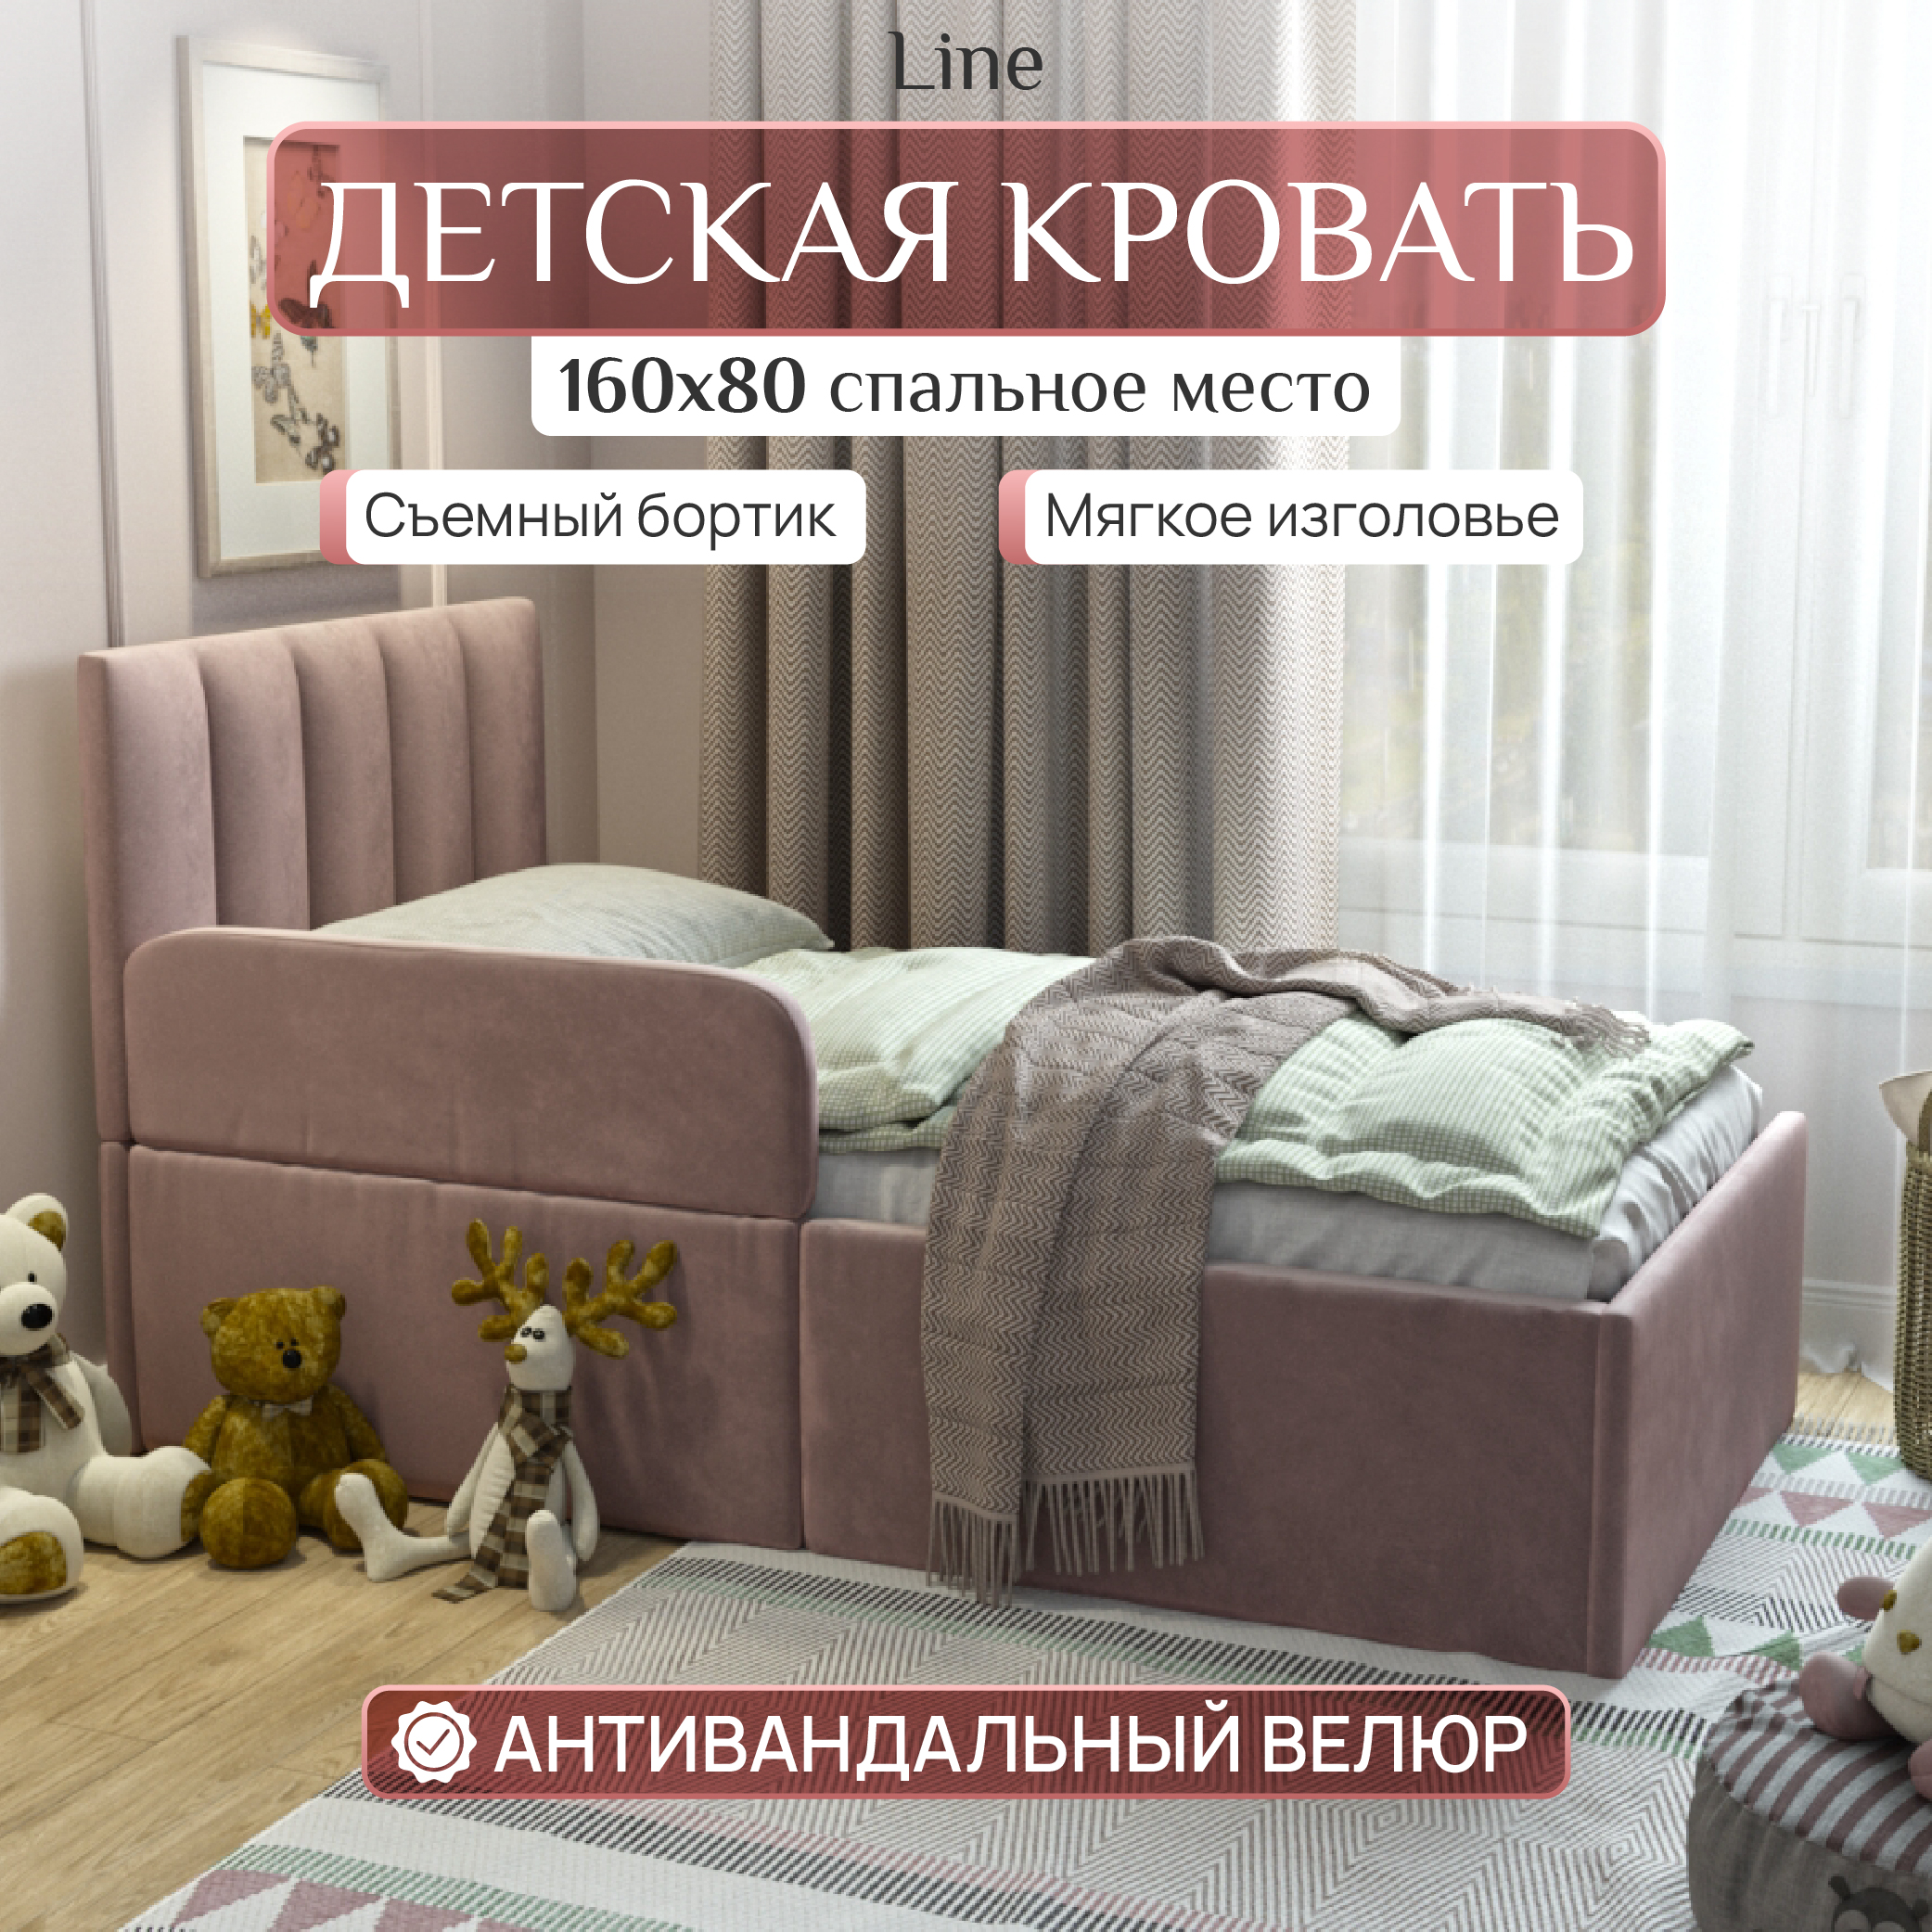 Детская кровать SleepAngel Line 160x80 см, с бортиком для детей от 3-х лет, Розовый детская кровать sweet sofa 180х90 с бортиком белый